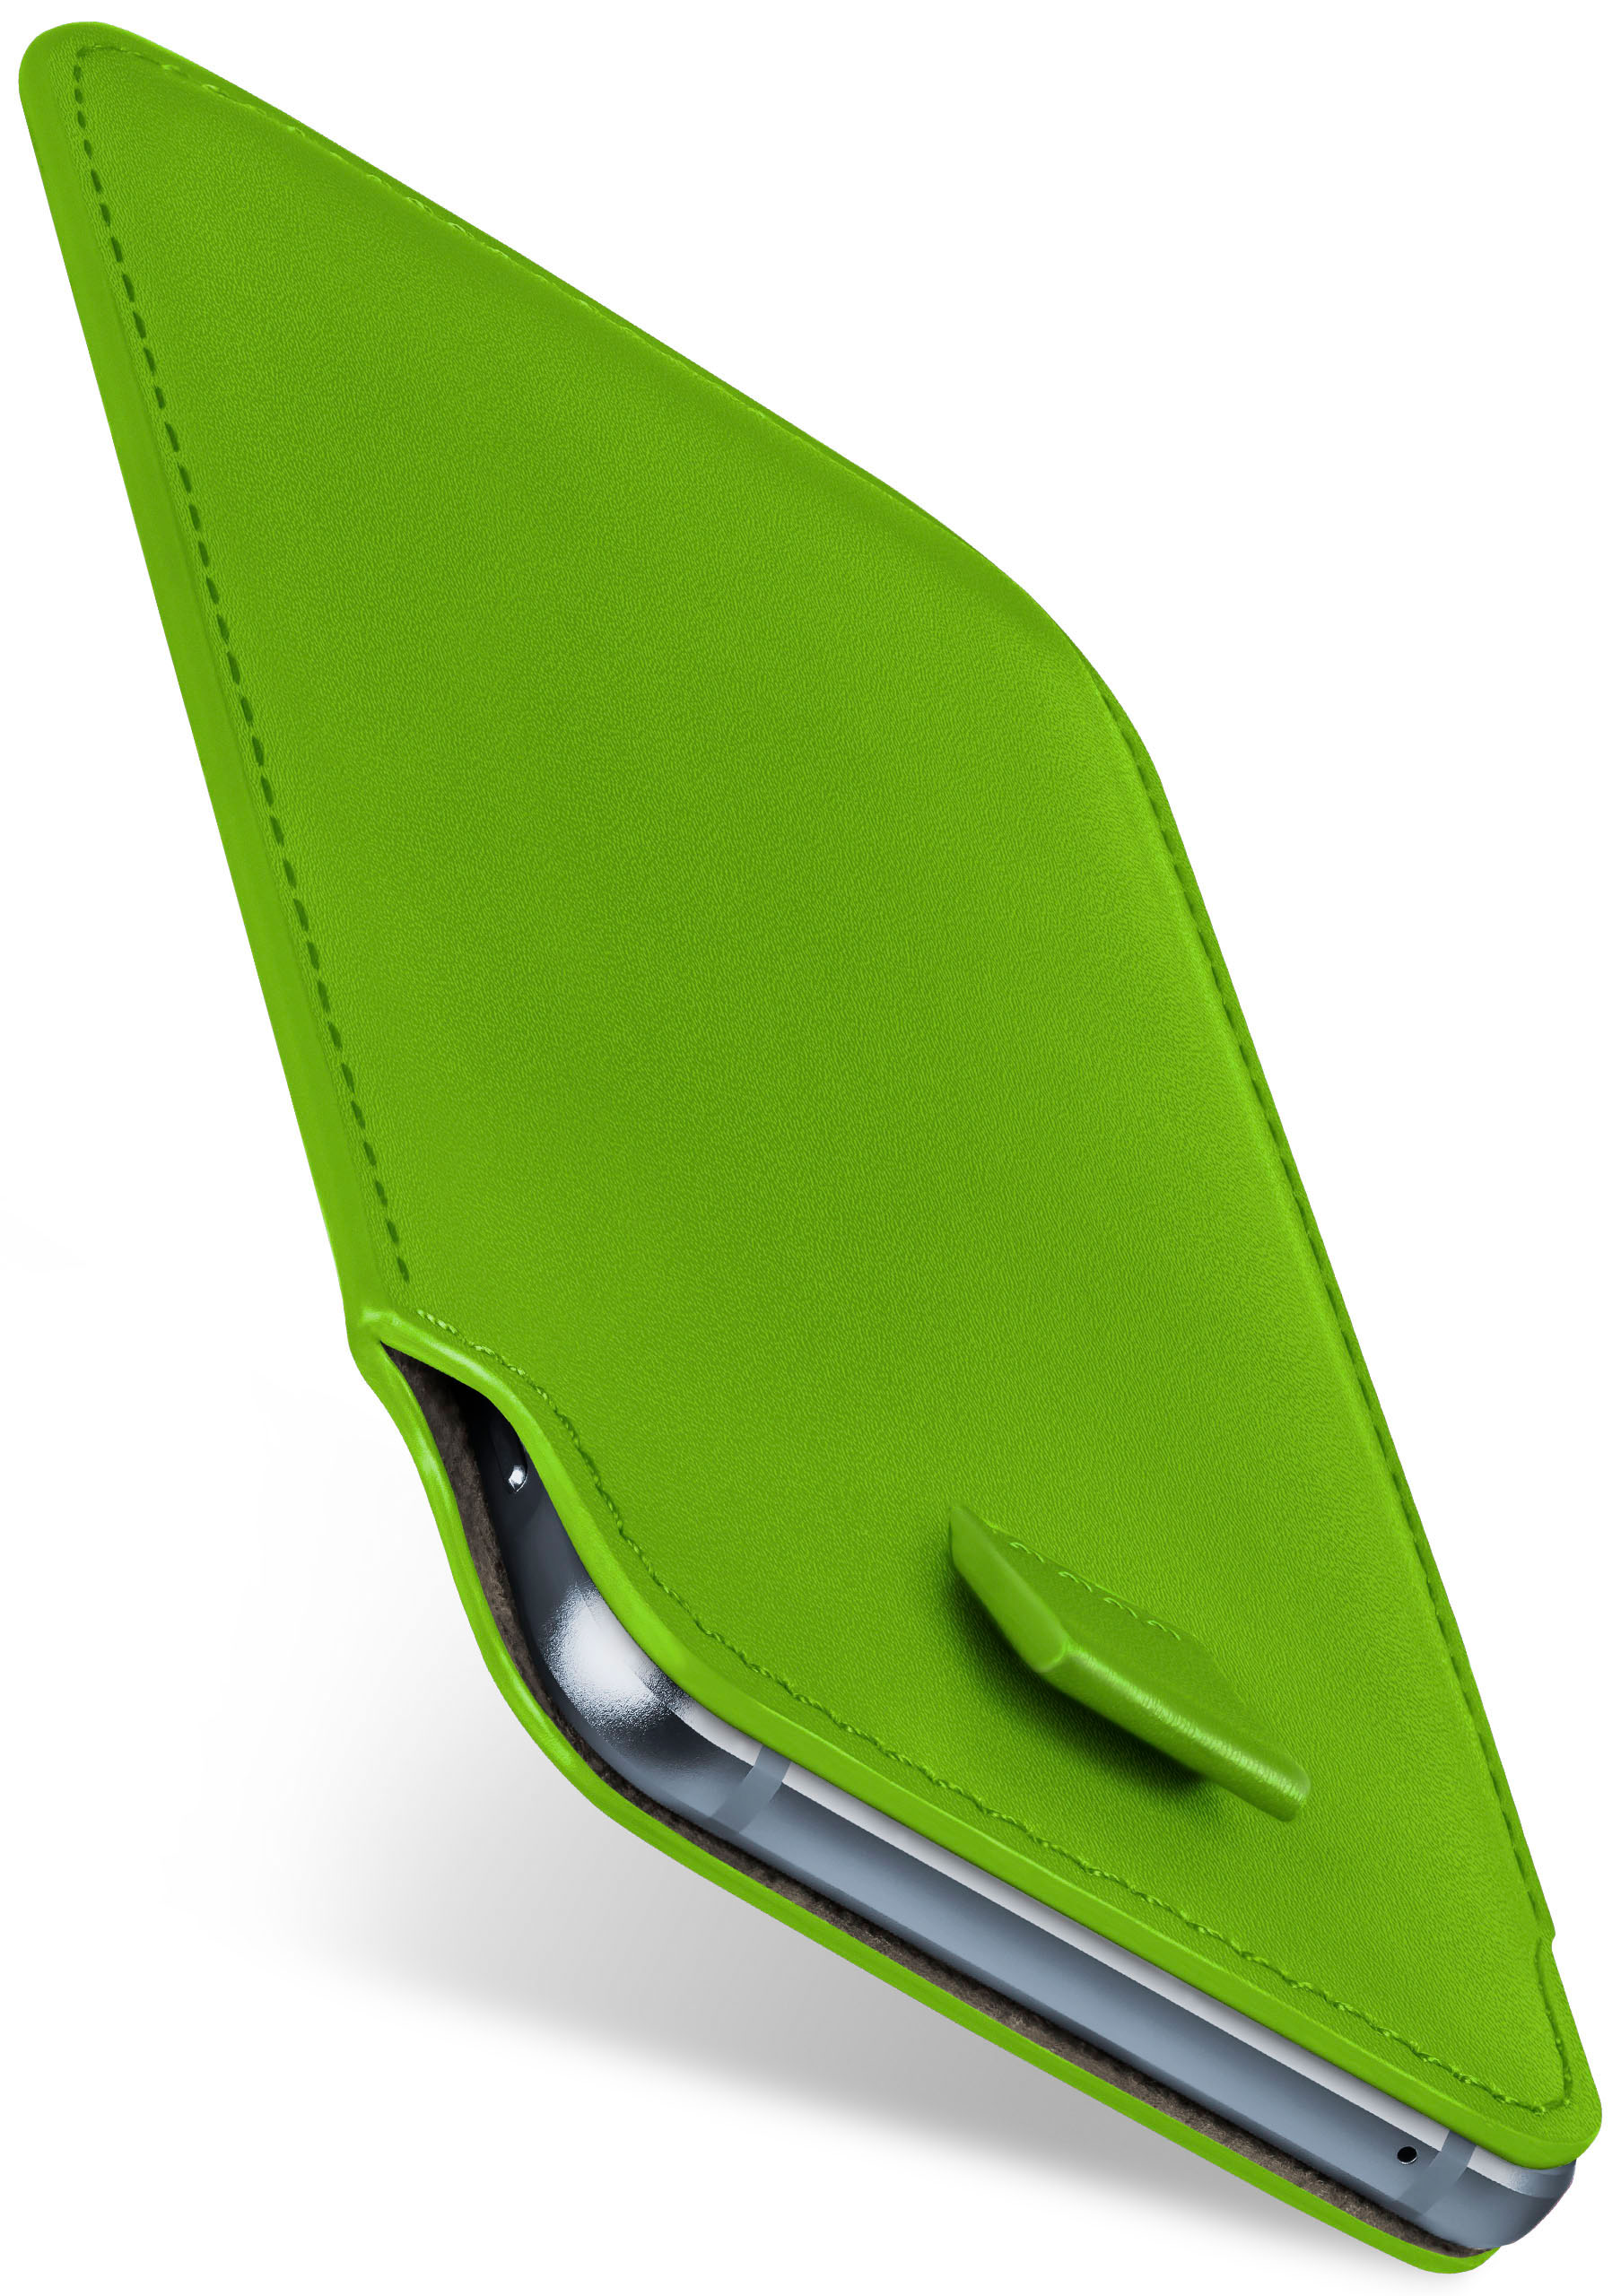 Slide MOEX CAT, Cover, Lime-Green Full S60, Case,